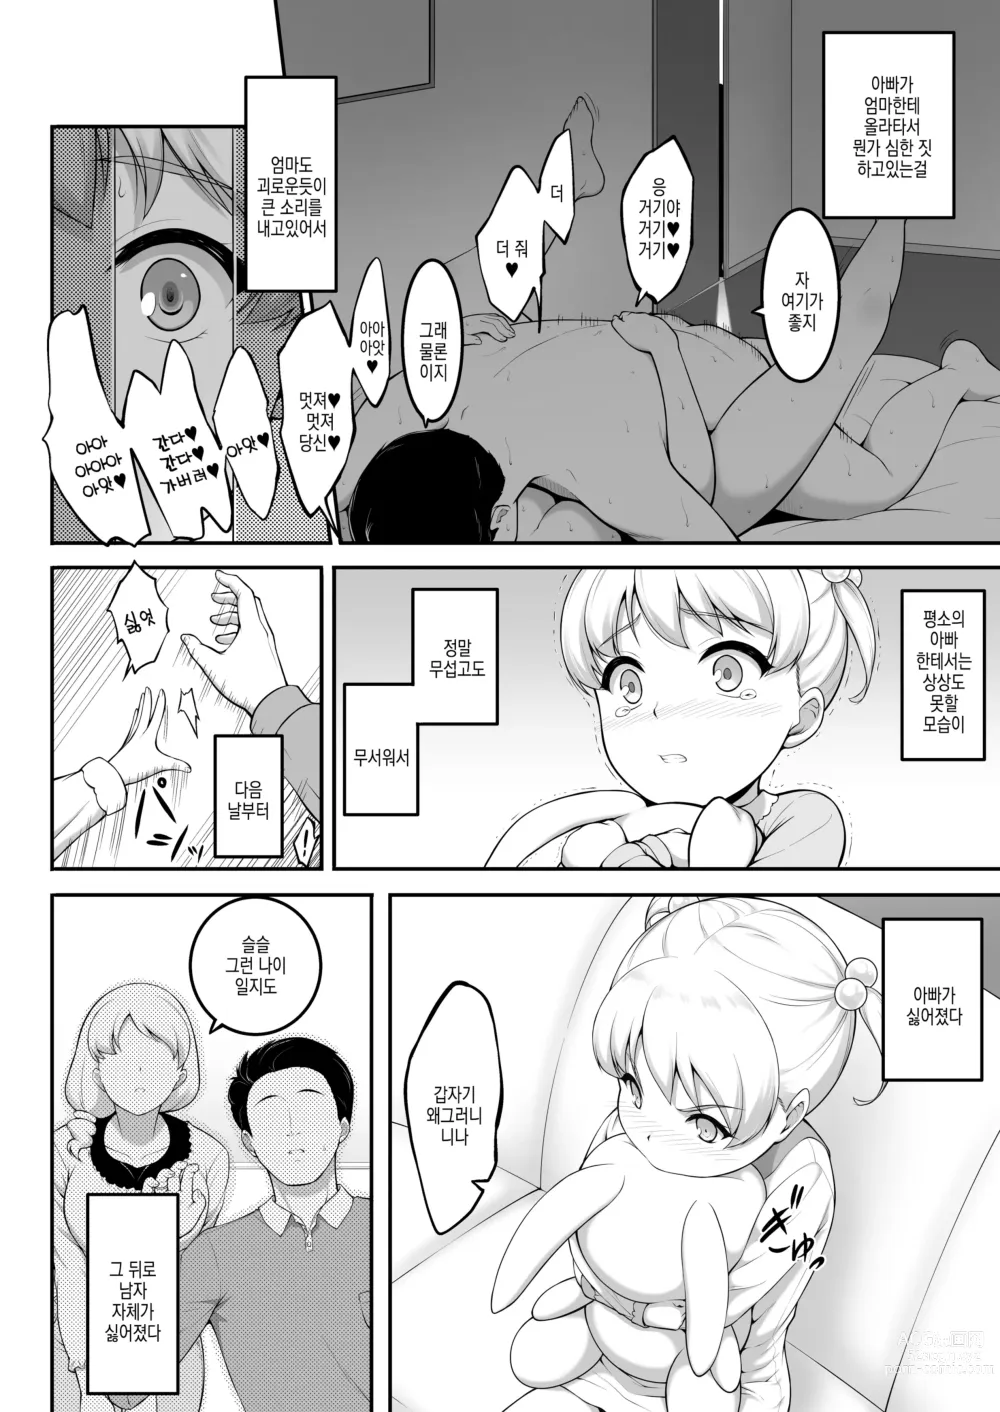 Page 80 of doujinshi 여자 배구부 JK, 네토라레 당하다 2